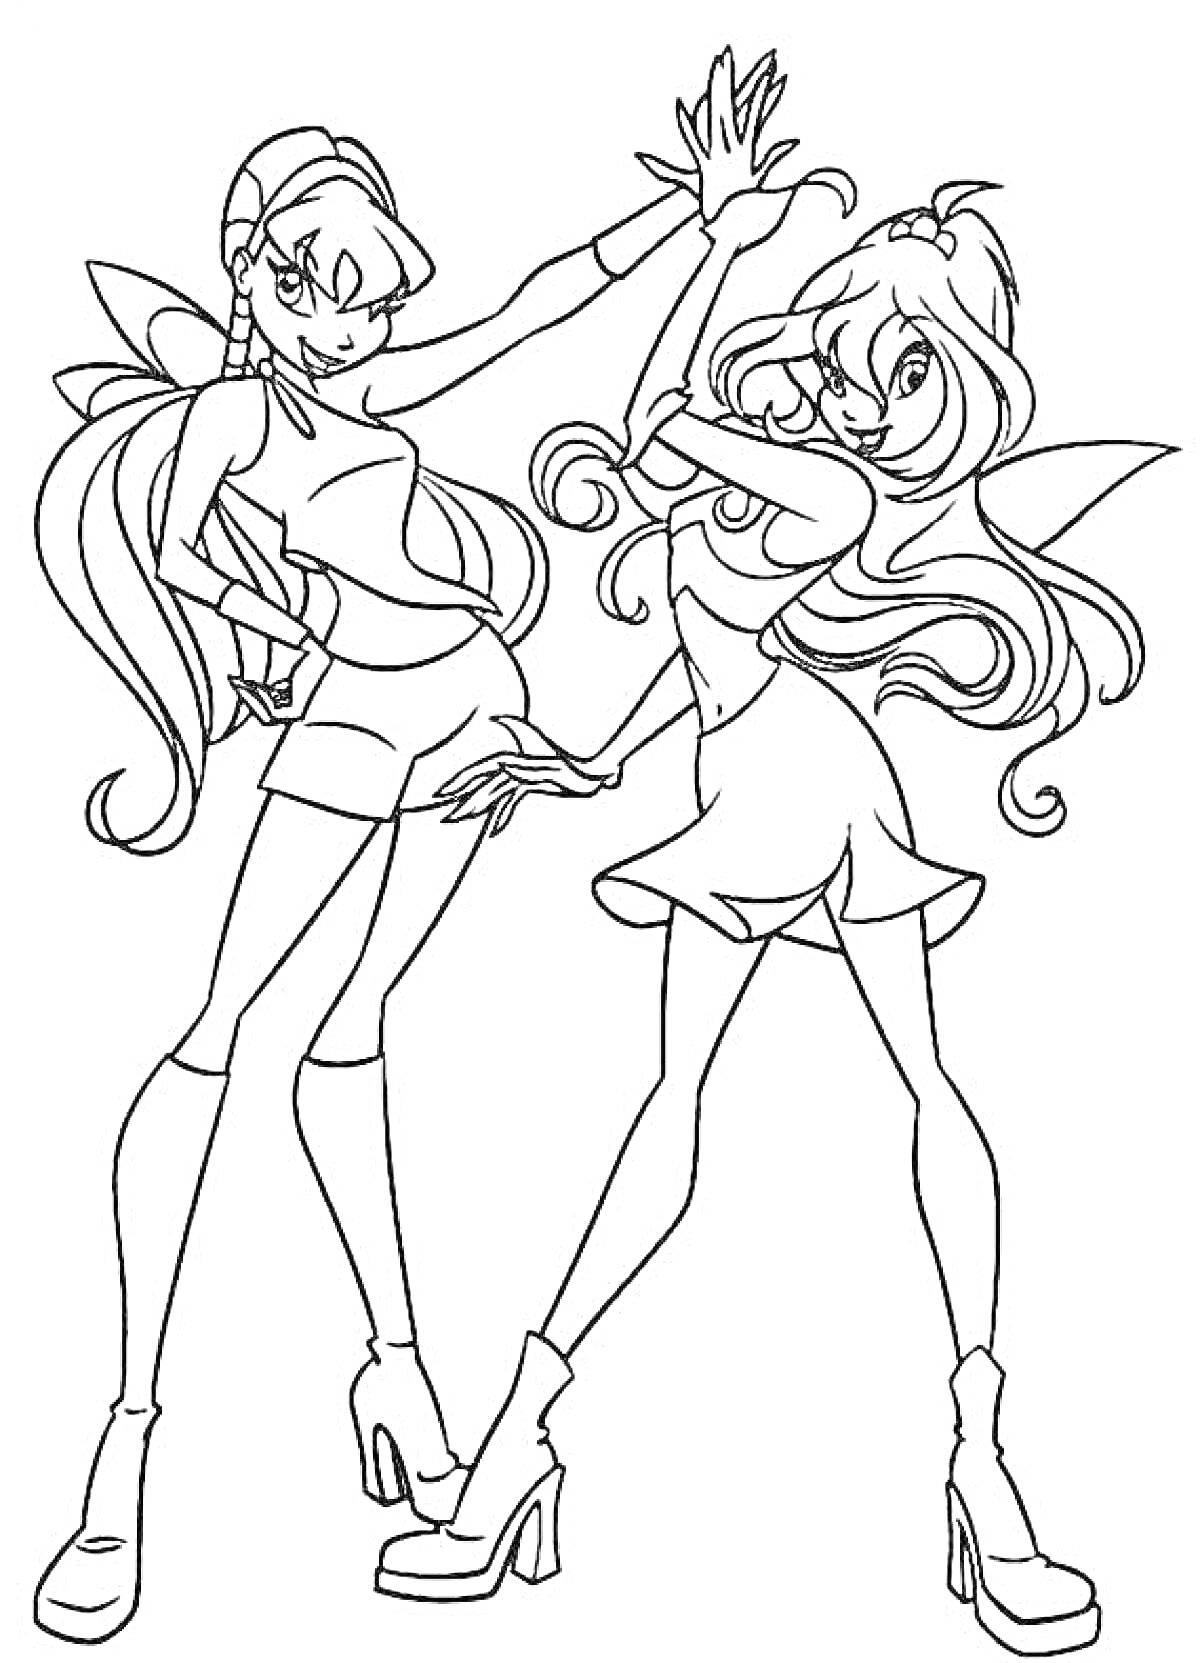 Раскраска Две феи Винкс Блум в костюмах с крыльями и длинными волосами